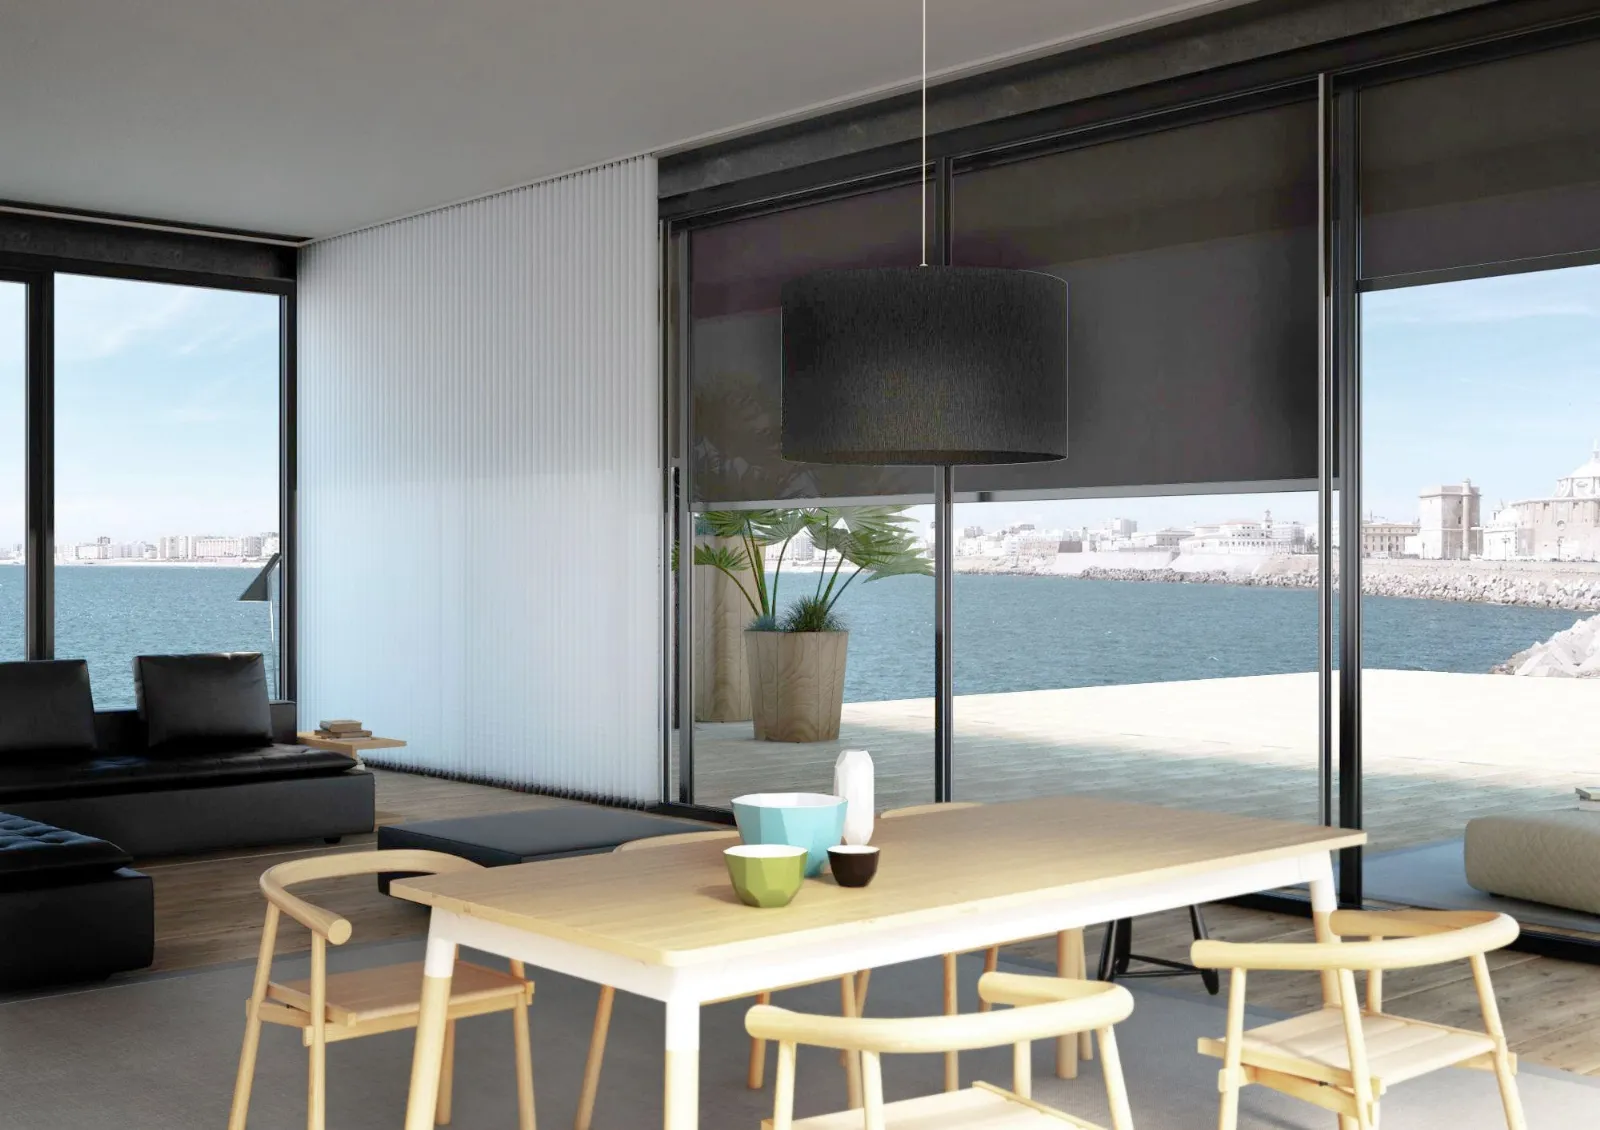 Tende casa moderna per vestire le finestre con stile tende for Finestre giapponesi